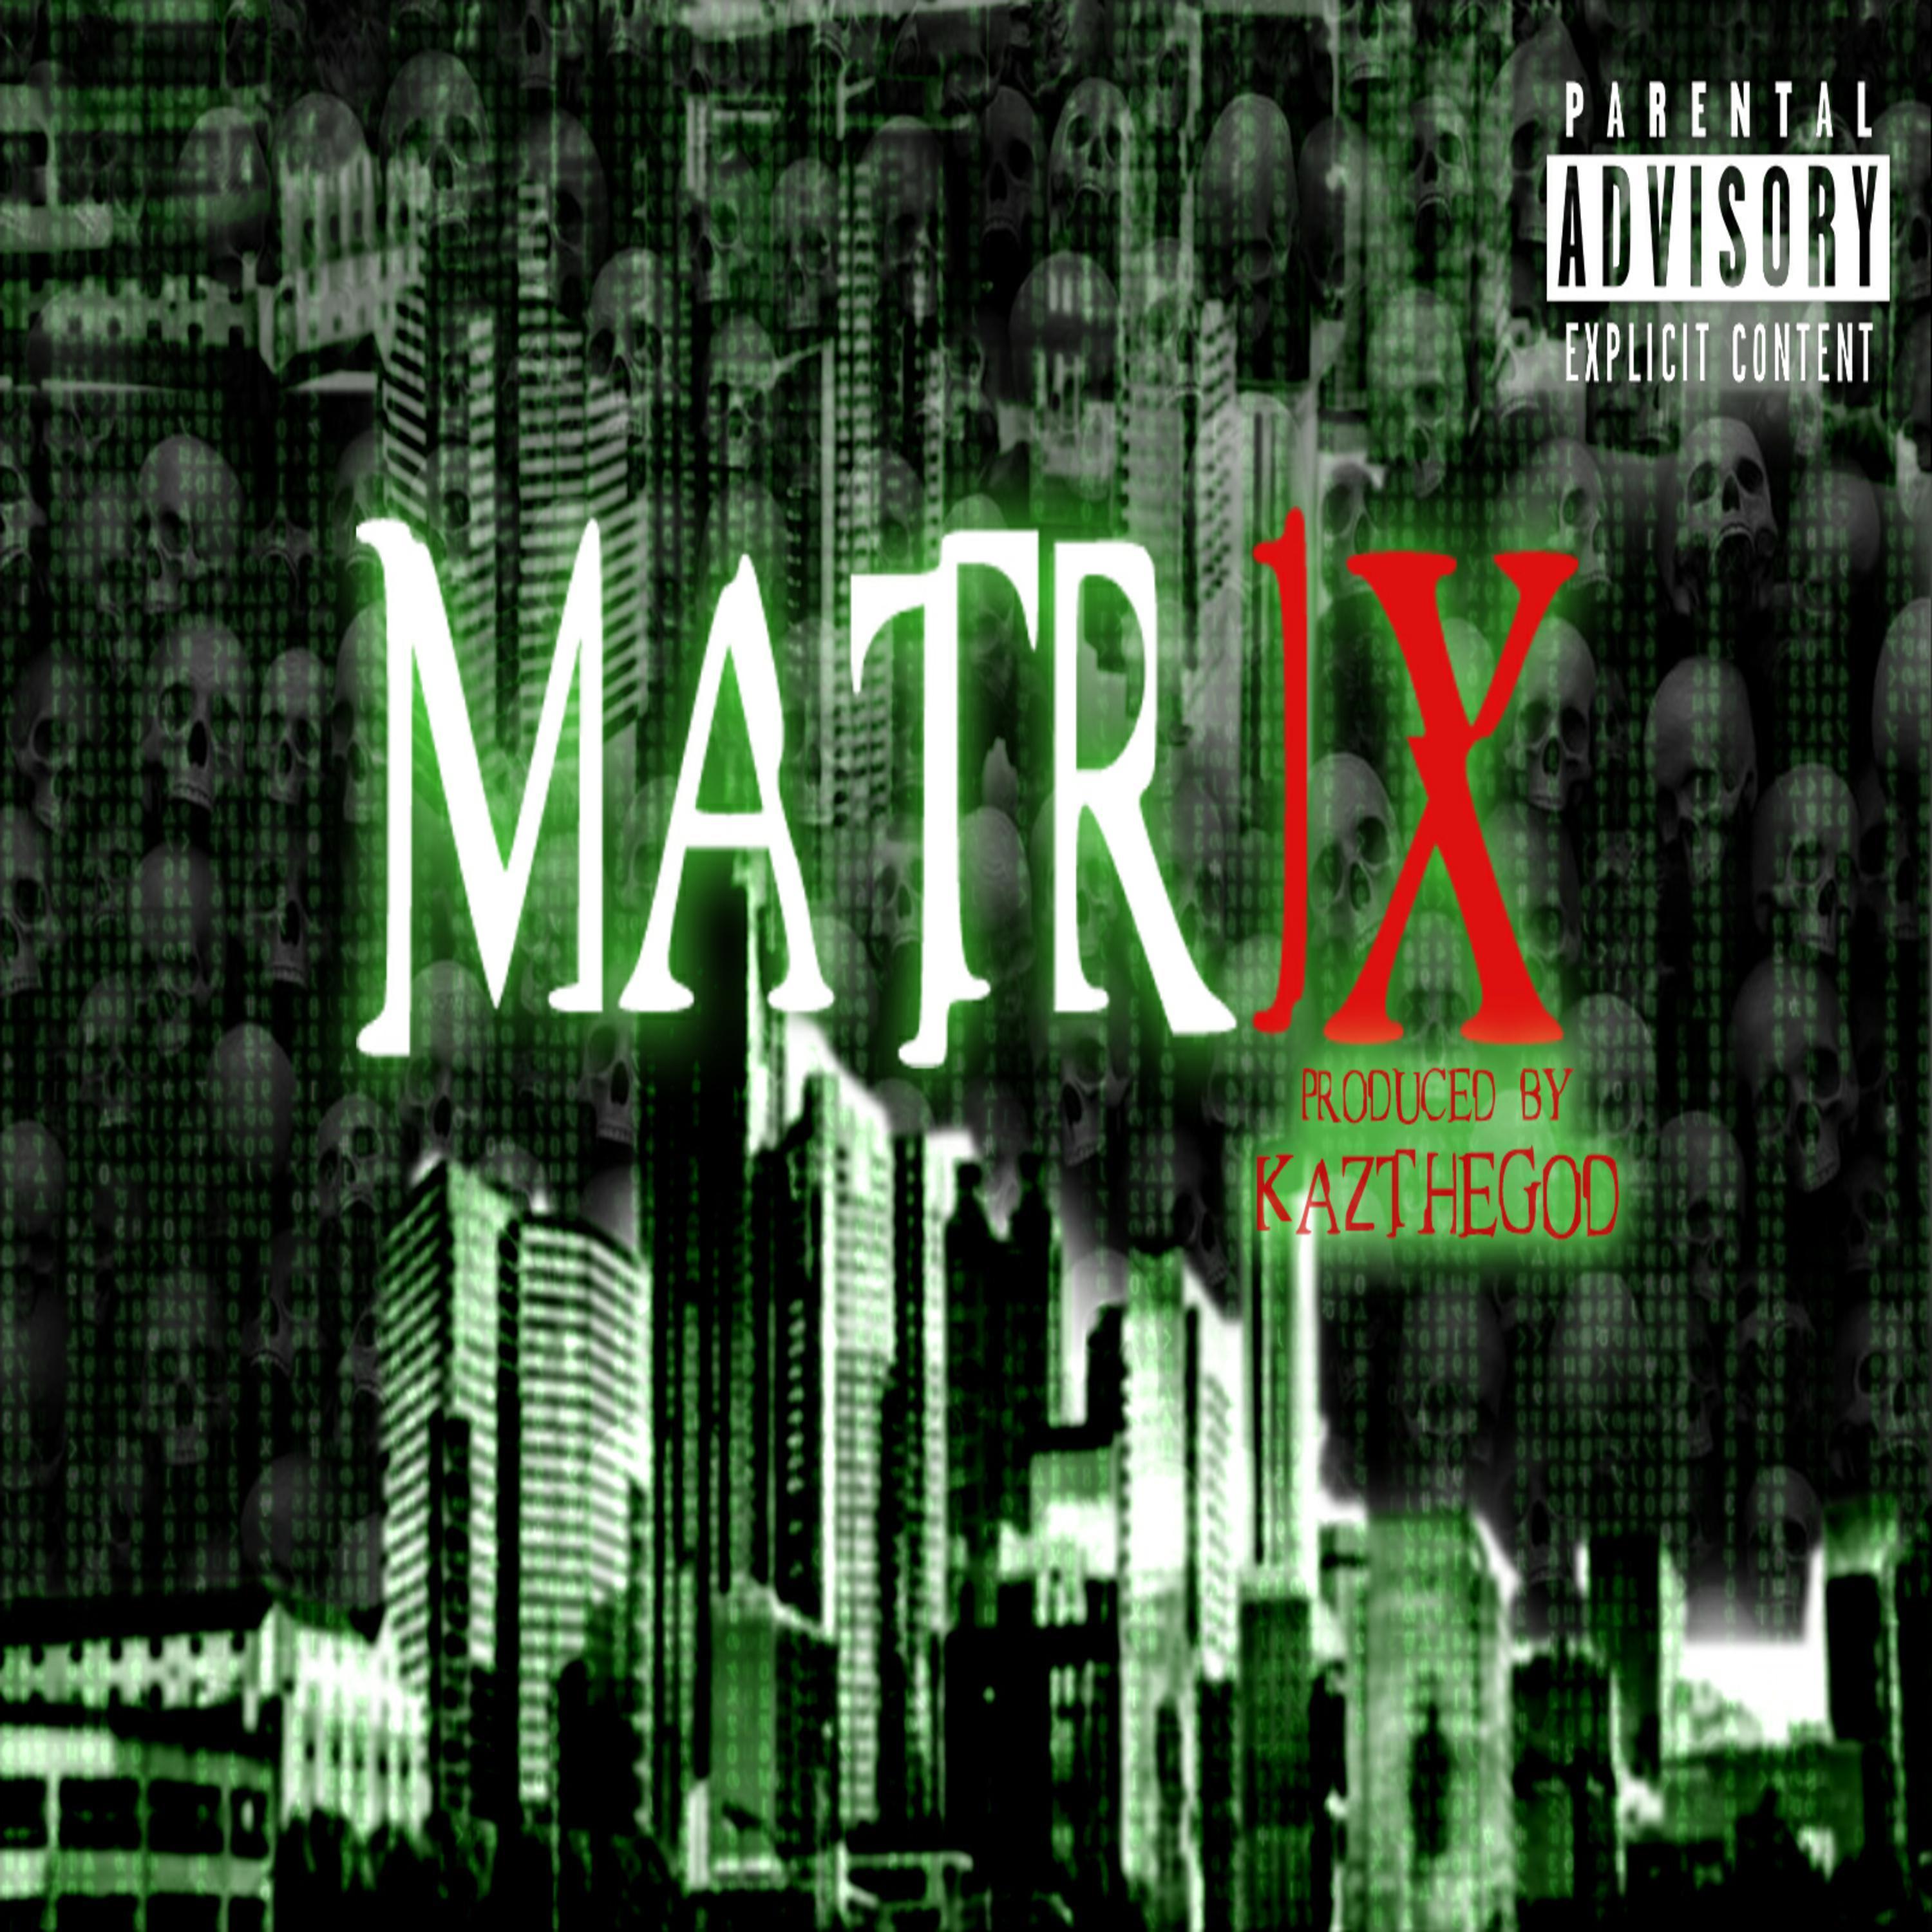 Matrix 